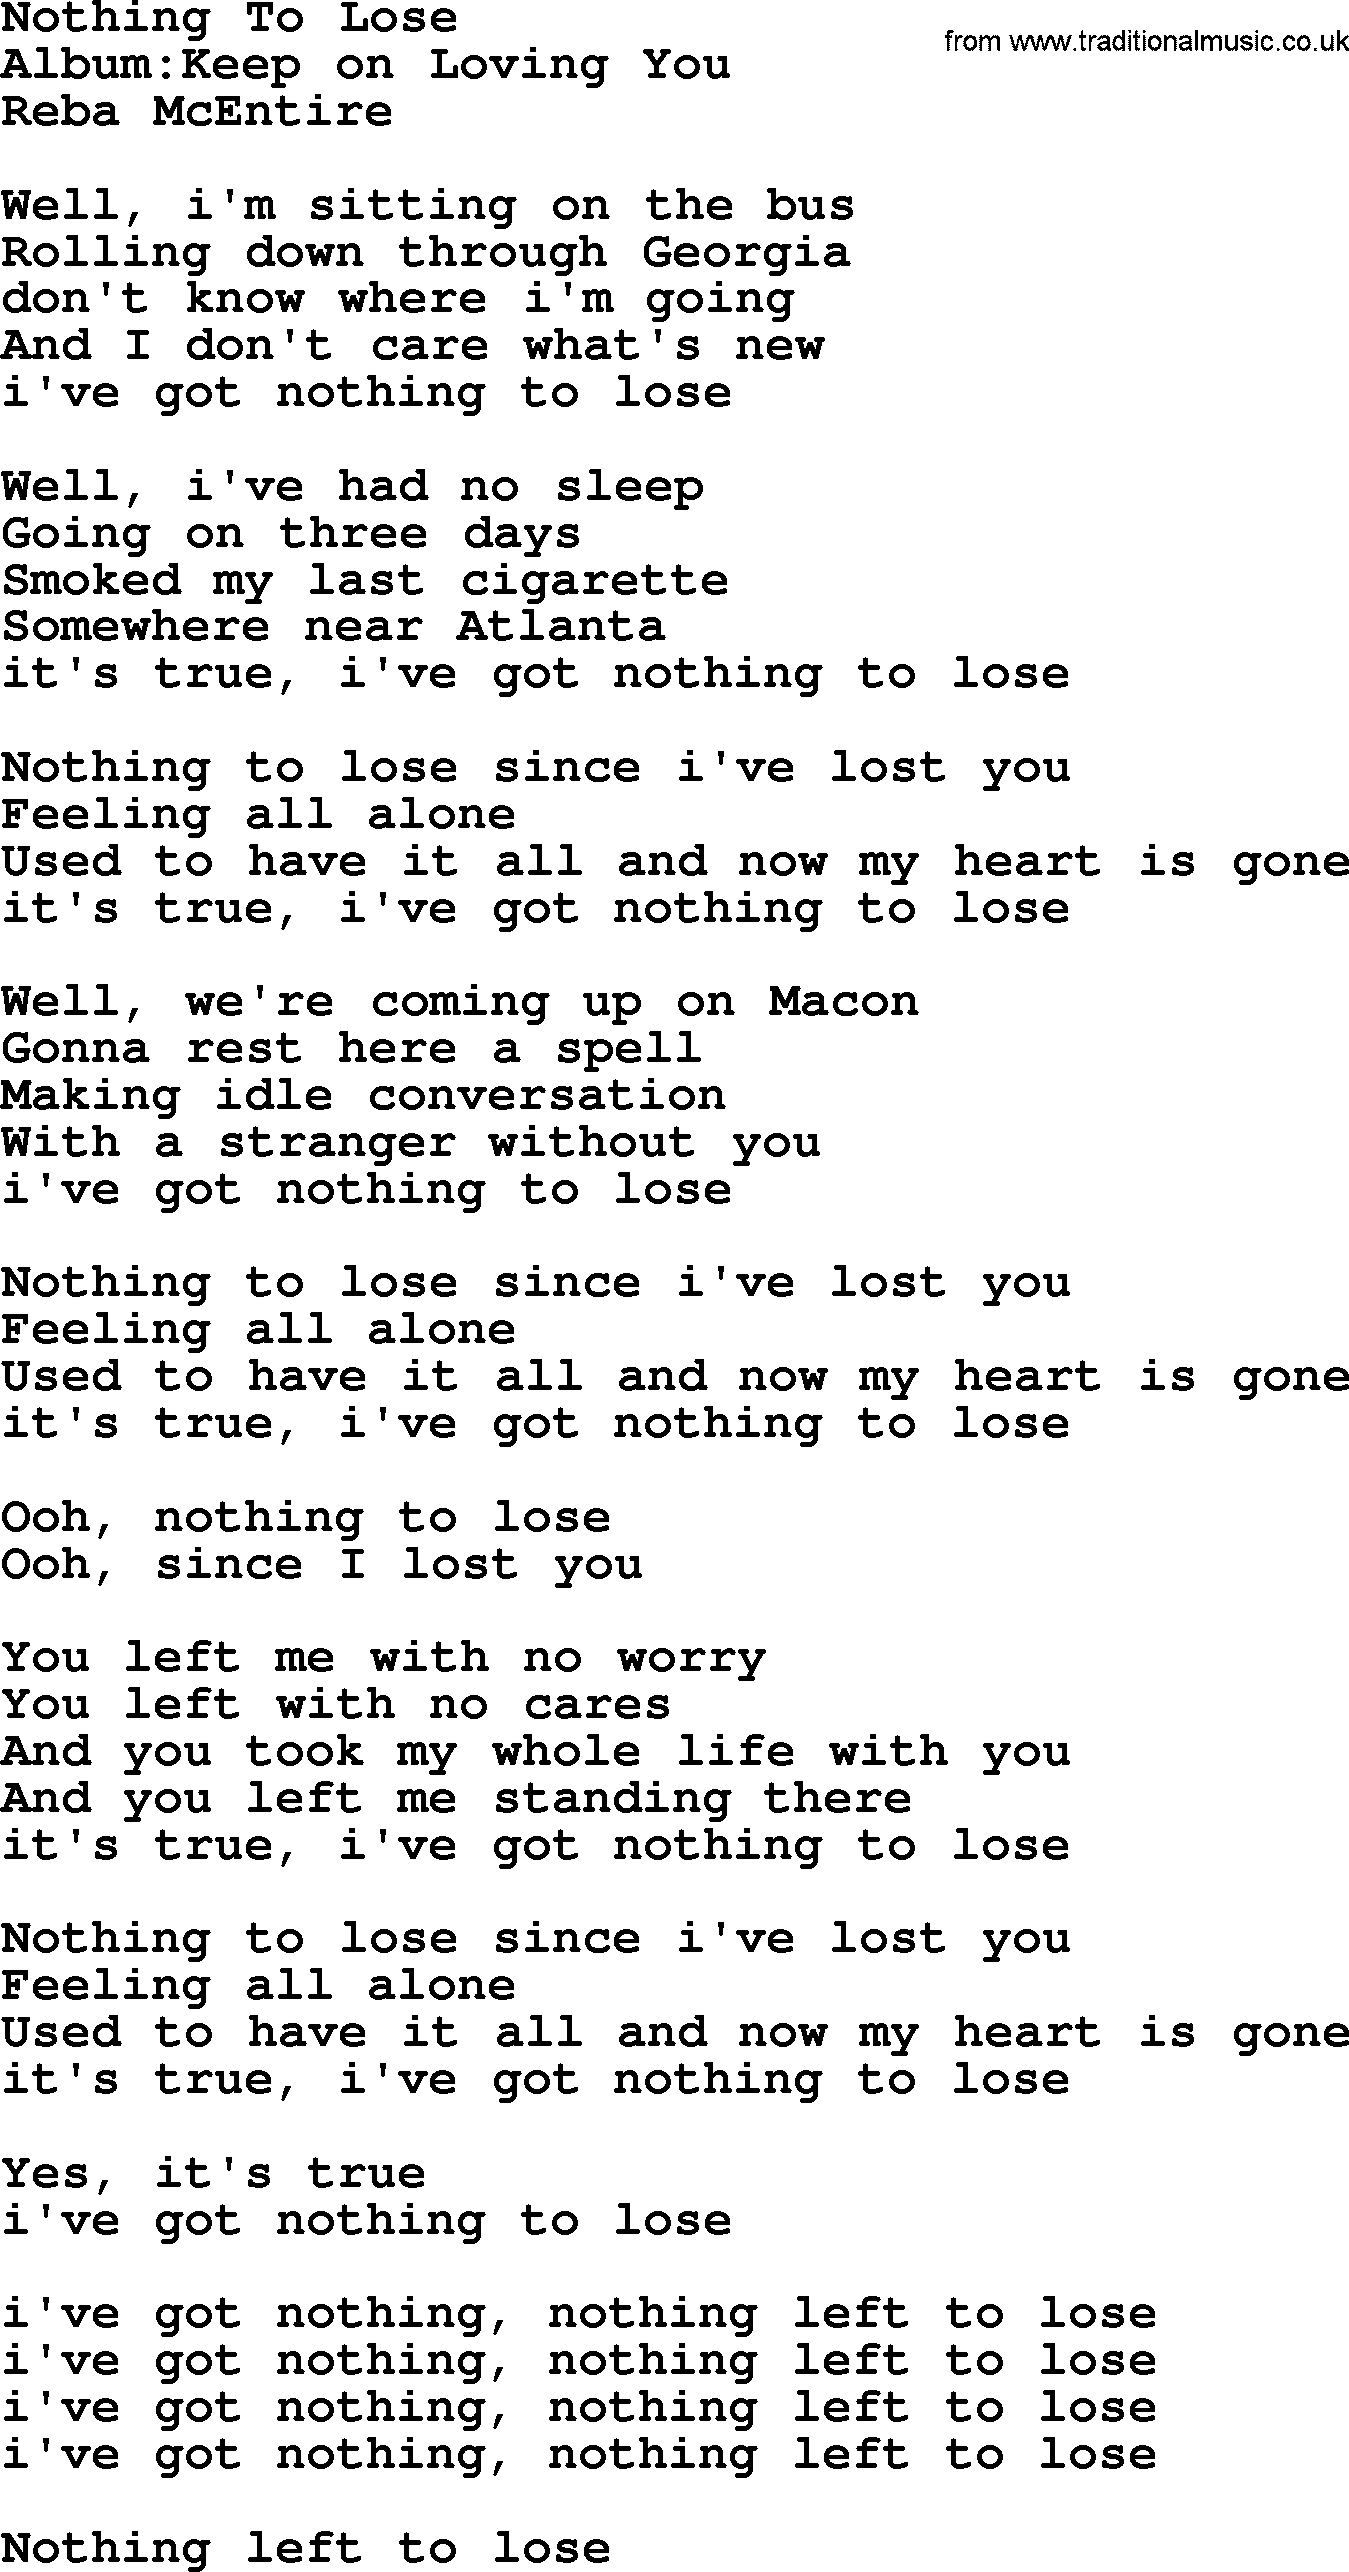 Reba McEntire song: Nothing To Lose lyrics